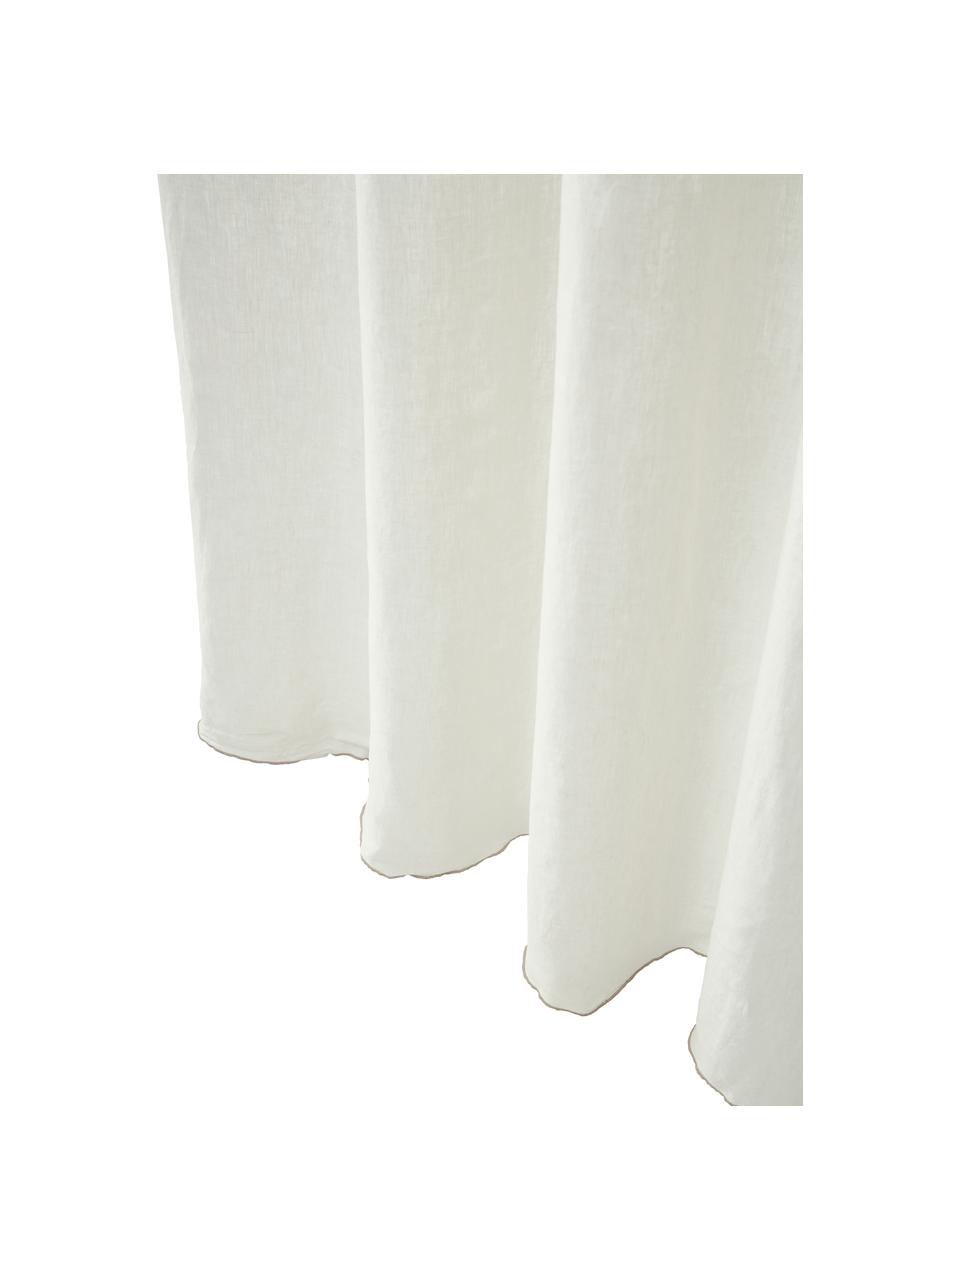 Cortinas de lino semitransparente de lino con dobladillo Eleonara, 2 uds., 100% lino, Blanco crema, An 145 x L 260 cm